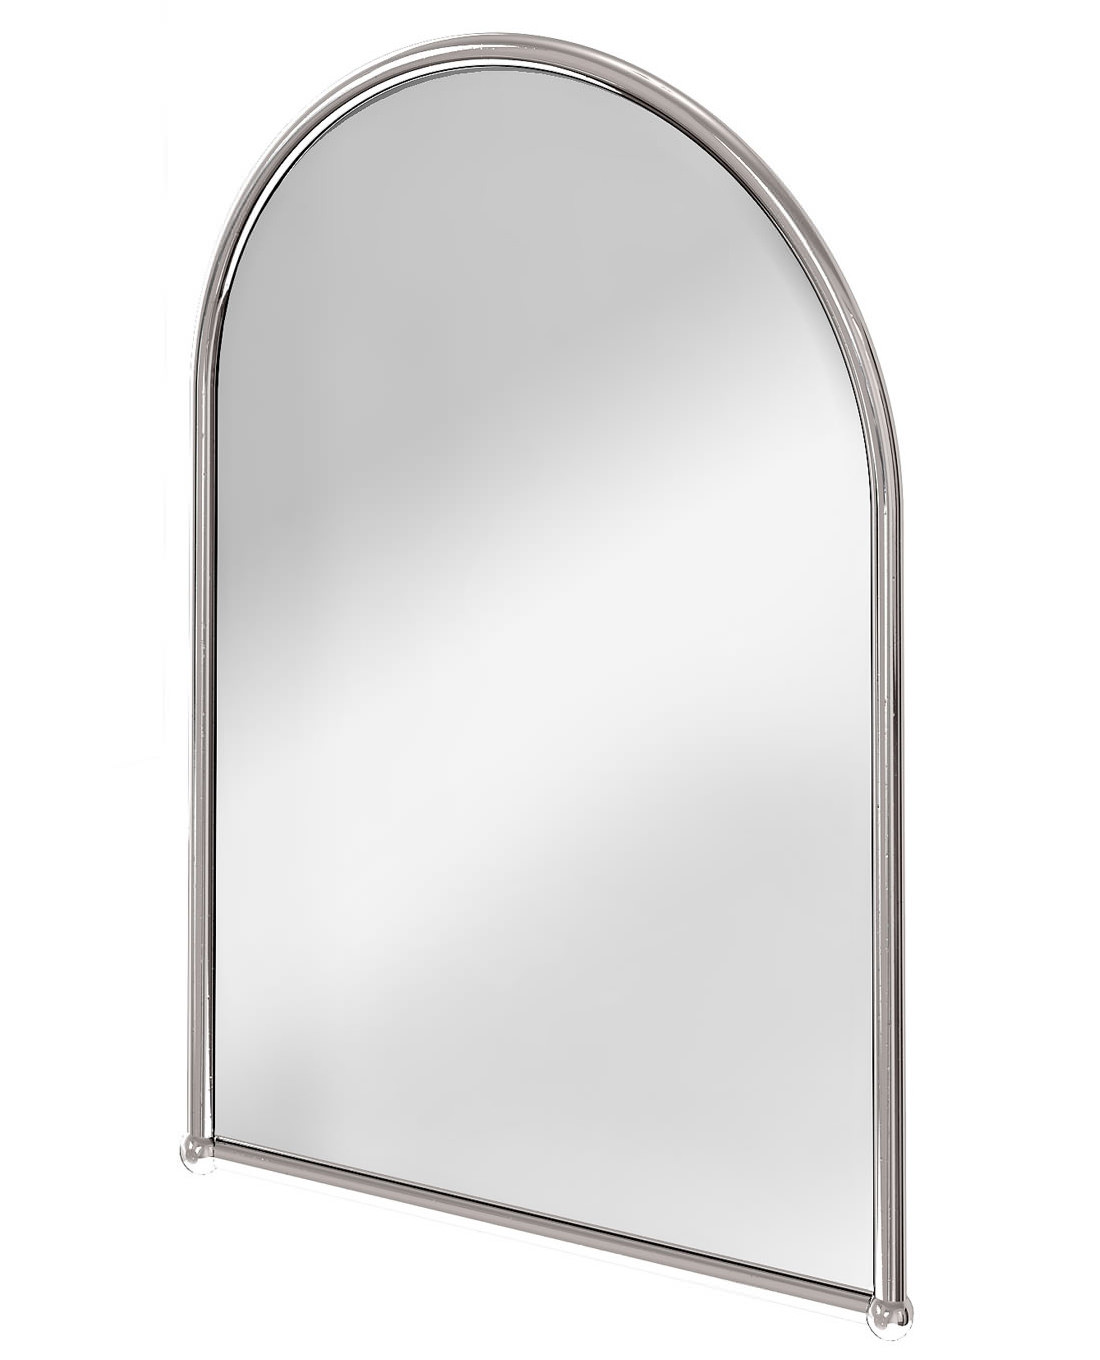 Chrome Framed Bathroom Mirror
 Burlington Arched Mirror With Chrome Frame A9 CHR